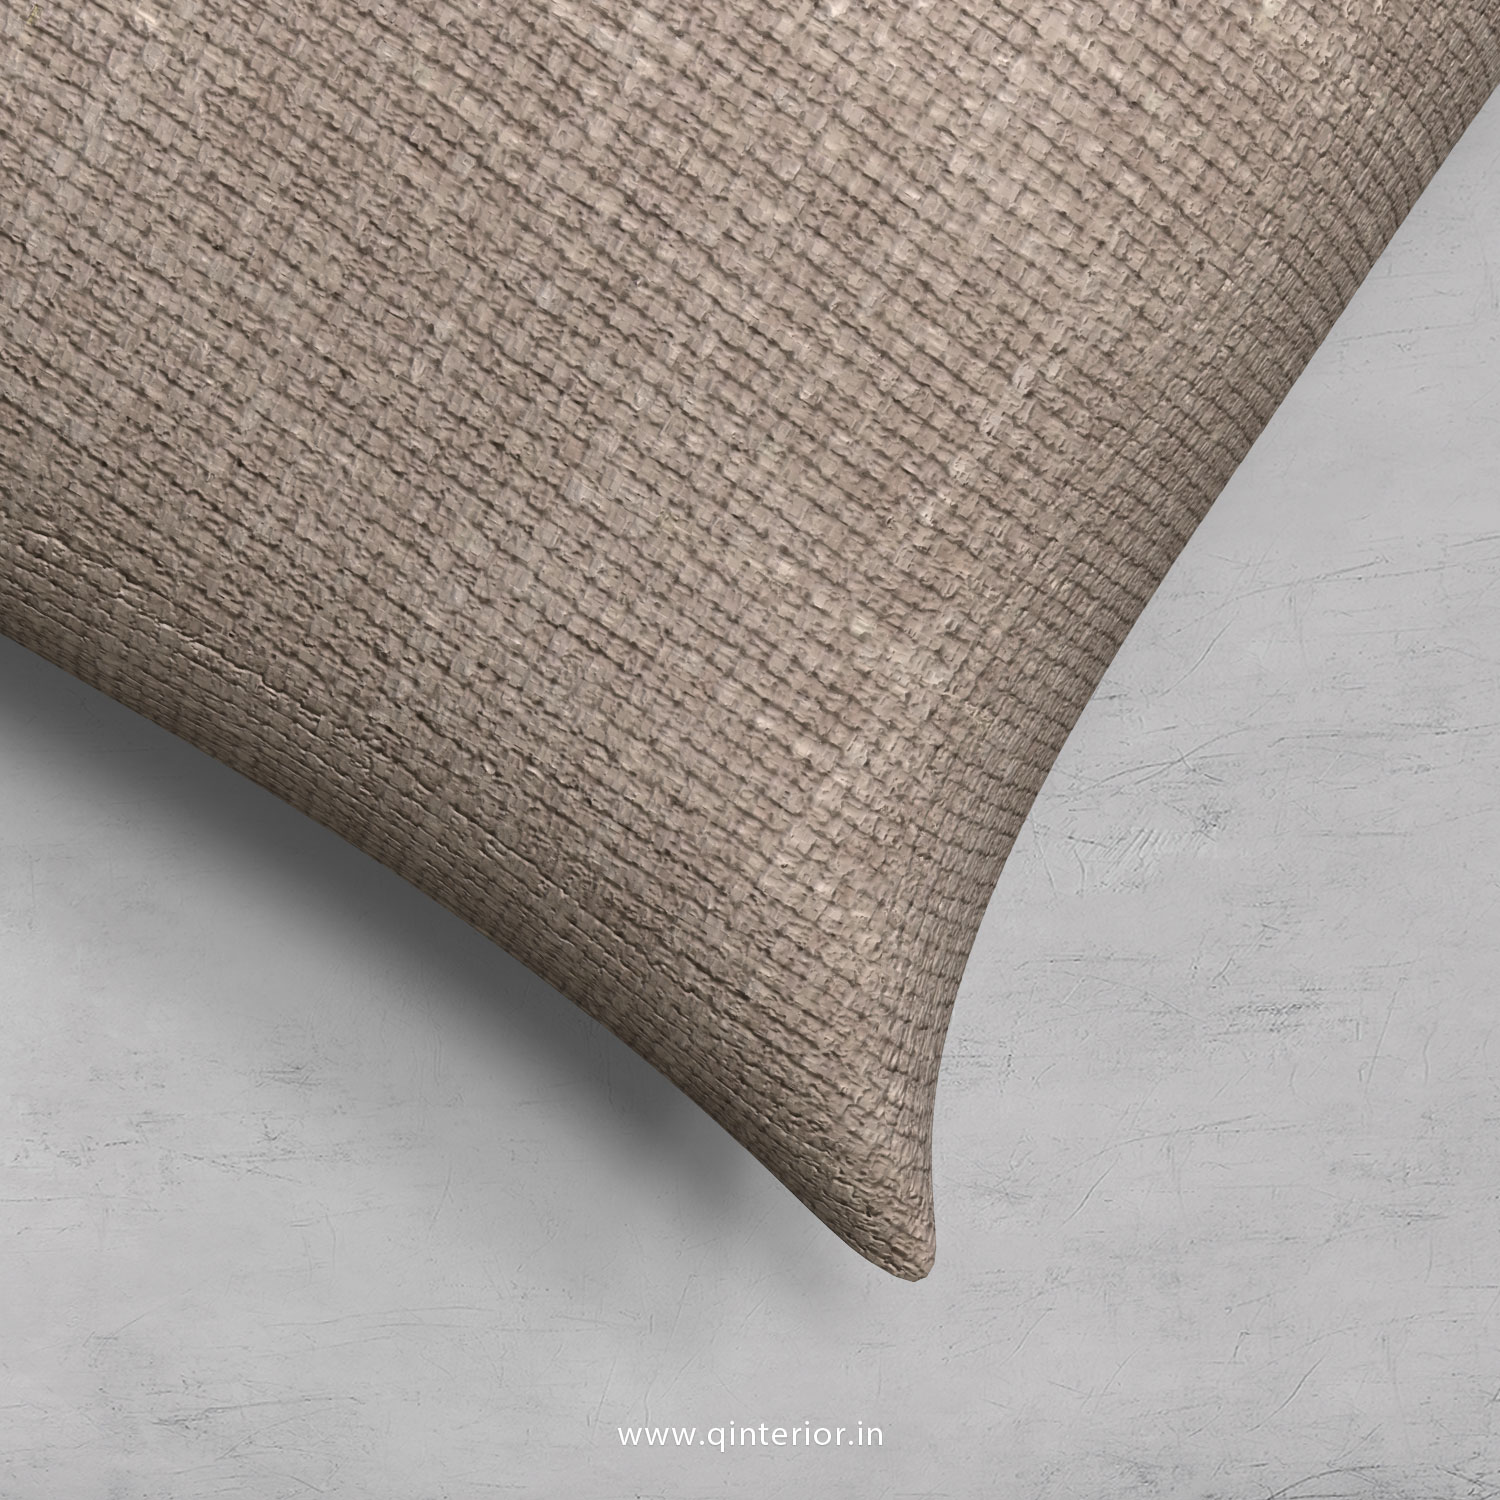 Cushion With Cushion Cover in Cotton Plain- CUS001 CP05